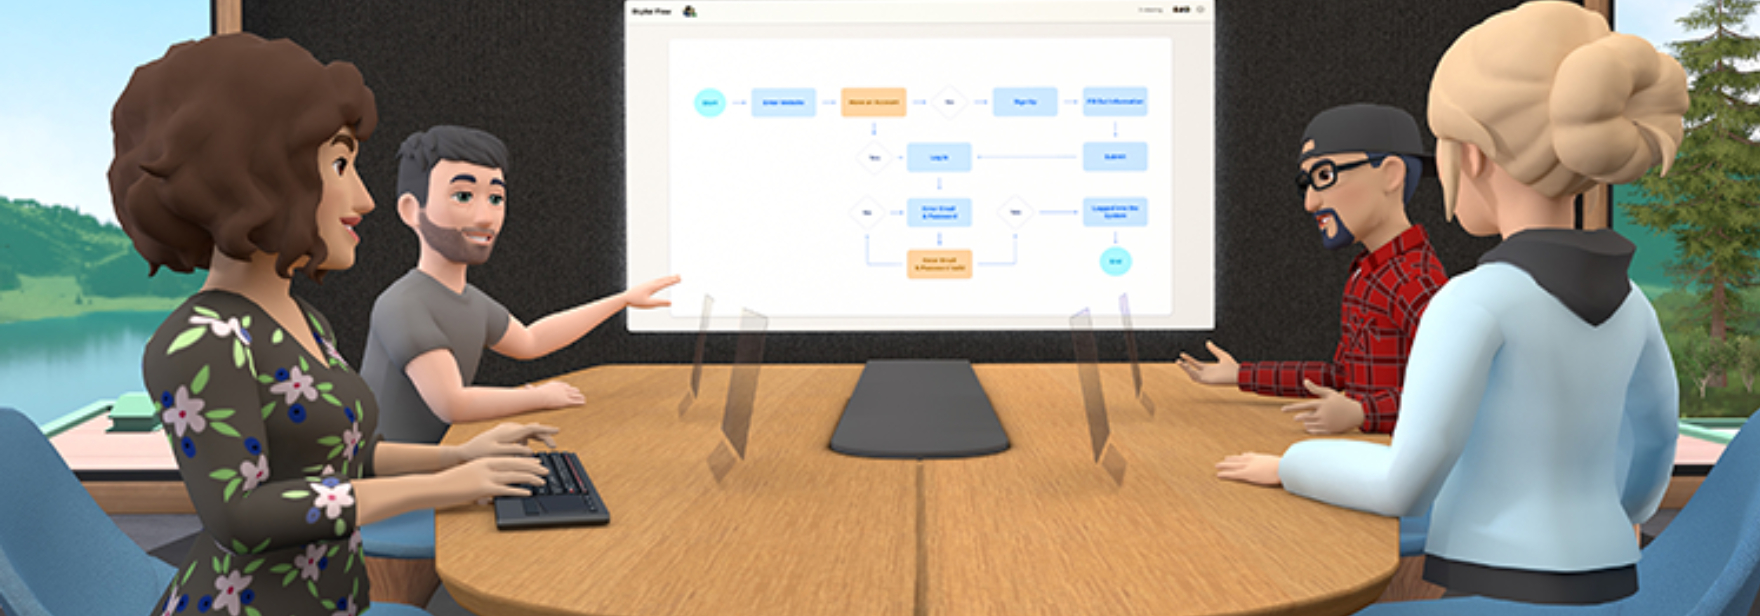 Horizon Workroom от Facebook позволяет бесплатно проводить встречи в виртуальной реальности. Приложение уже можно скачать